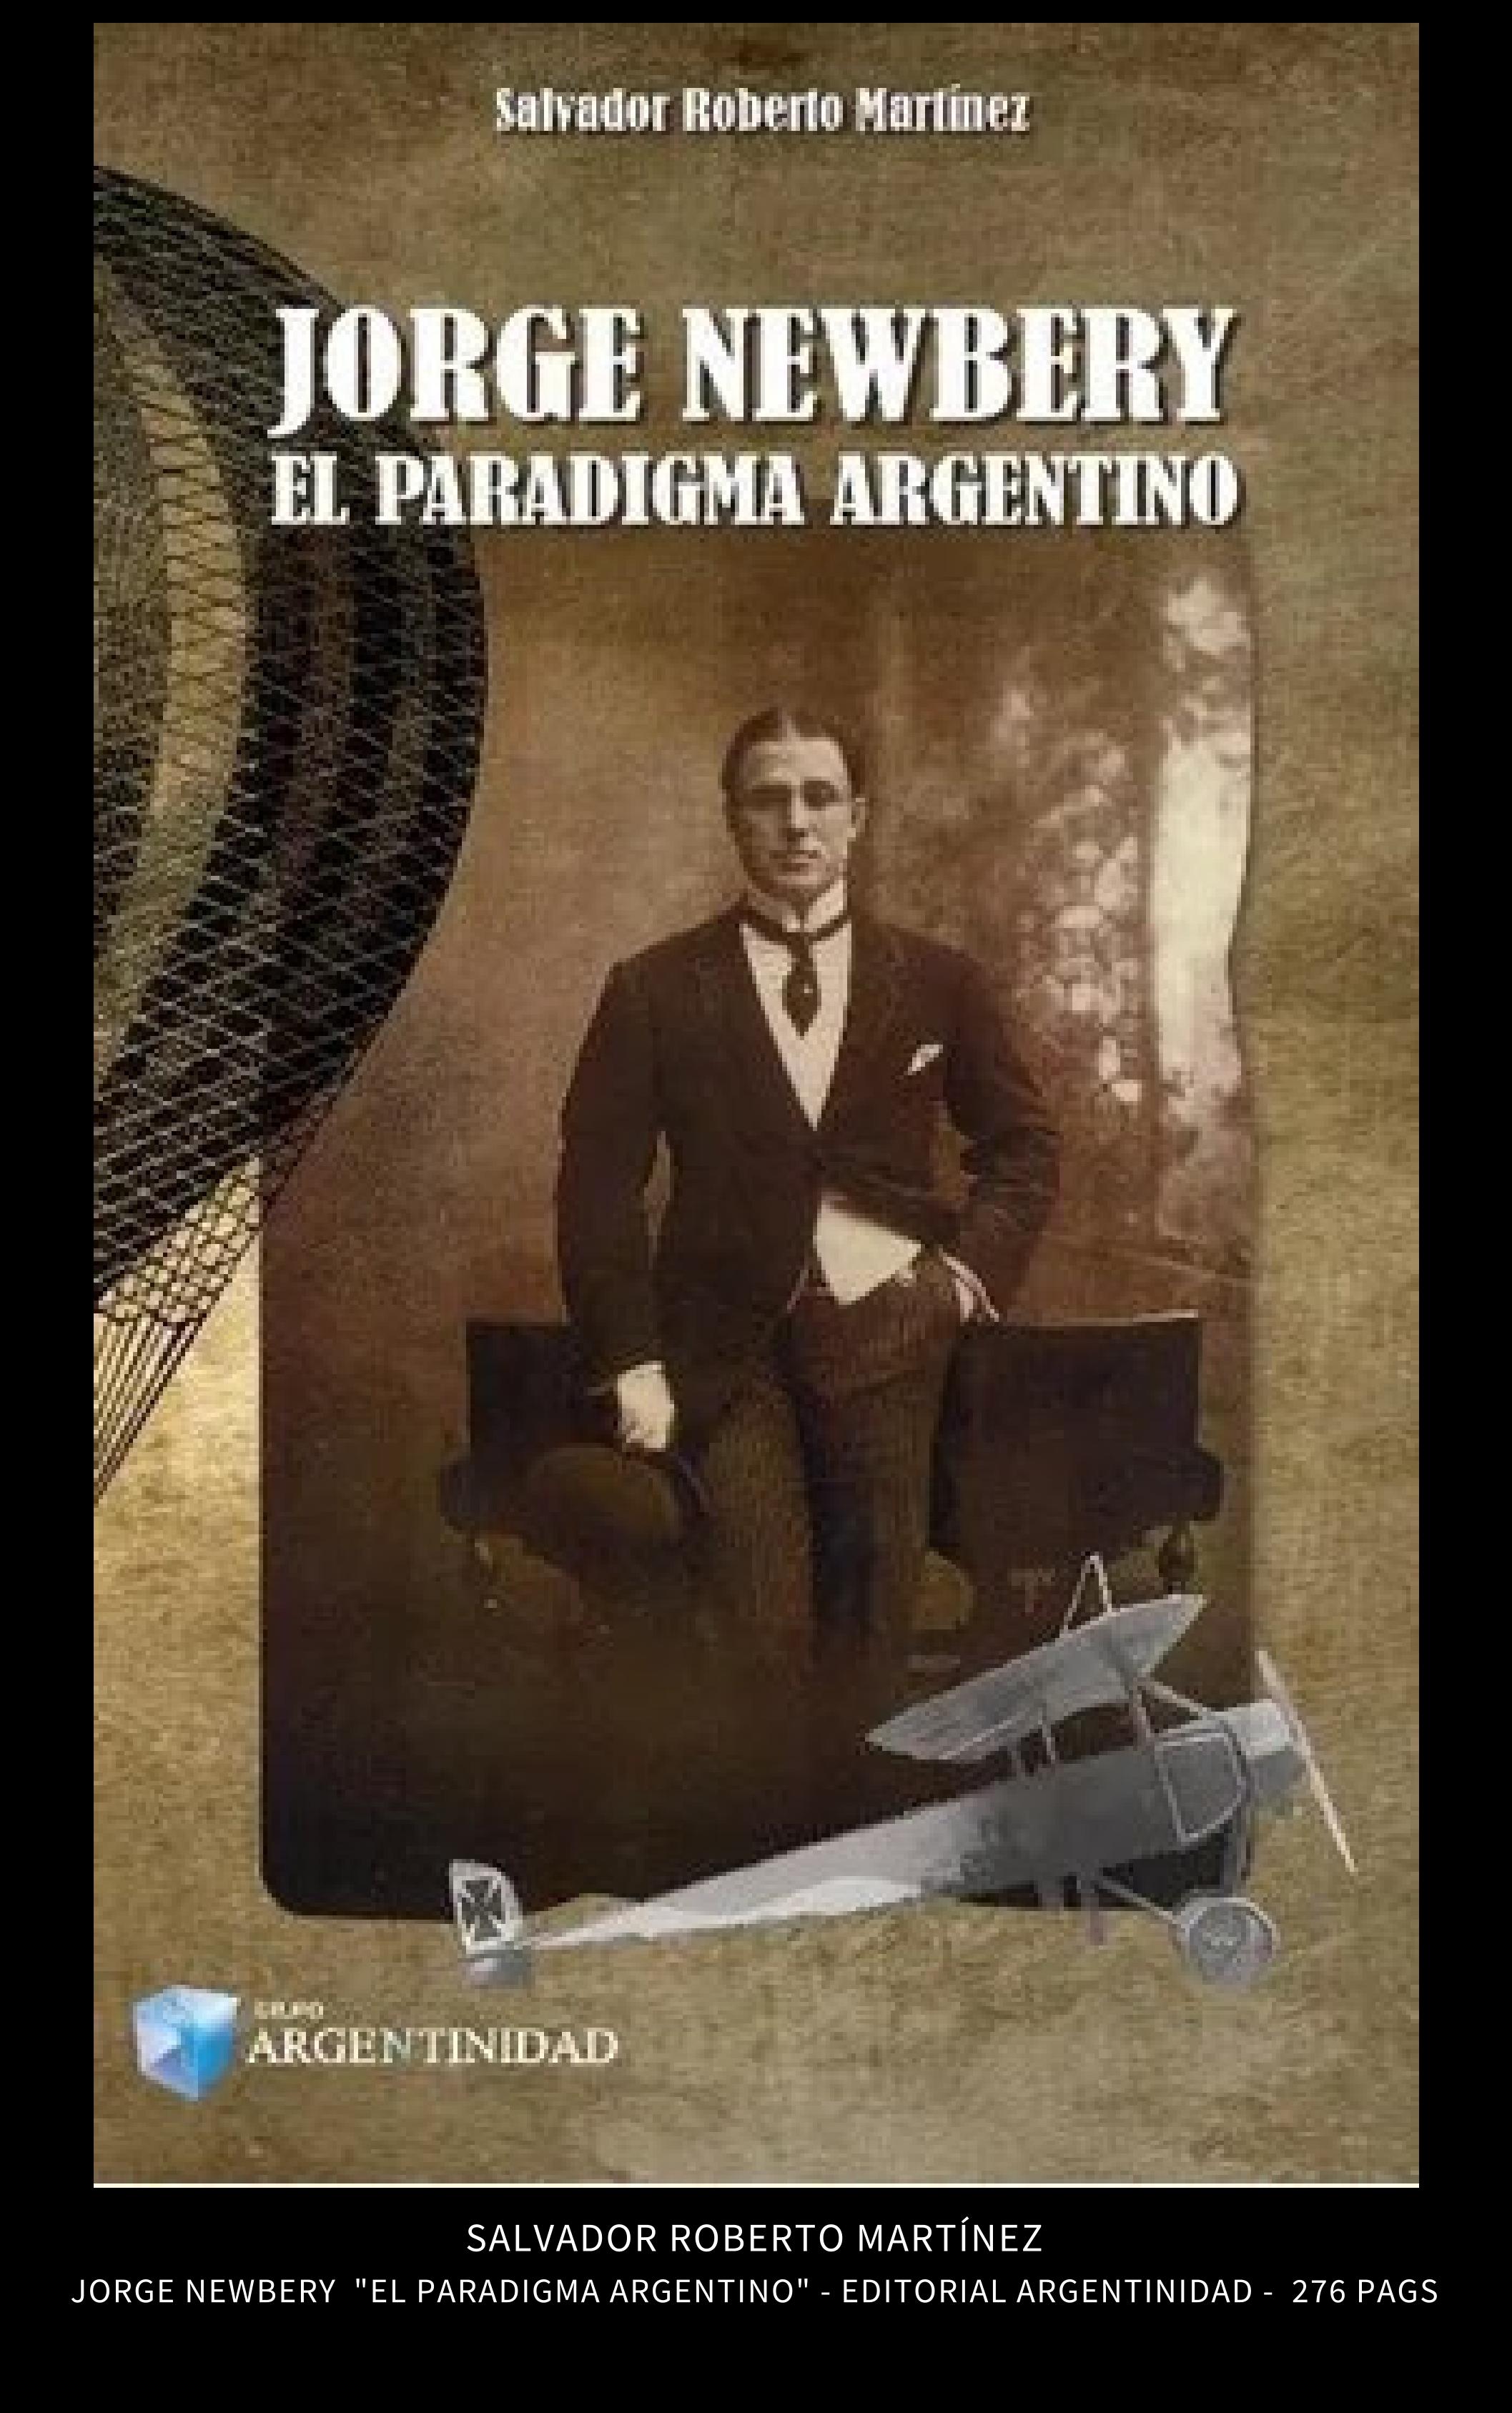 Salvador Roberto Martínez - JORGE NEWBERY - EL PARADIGMA ARGENTINO - Ediciones Argentinidad - Buenos Aires - 2019